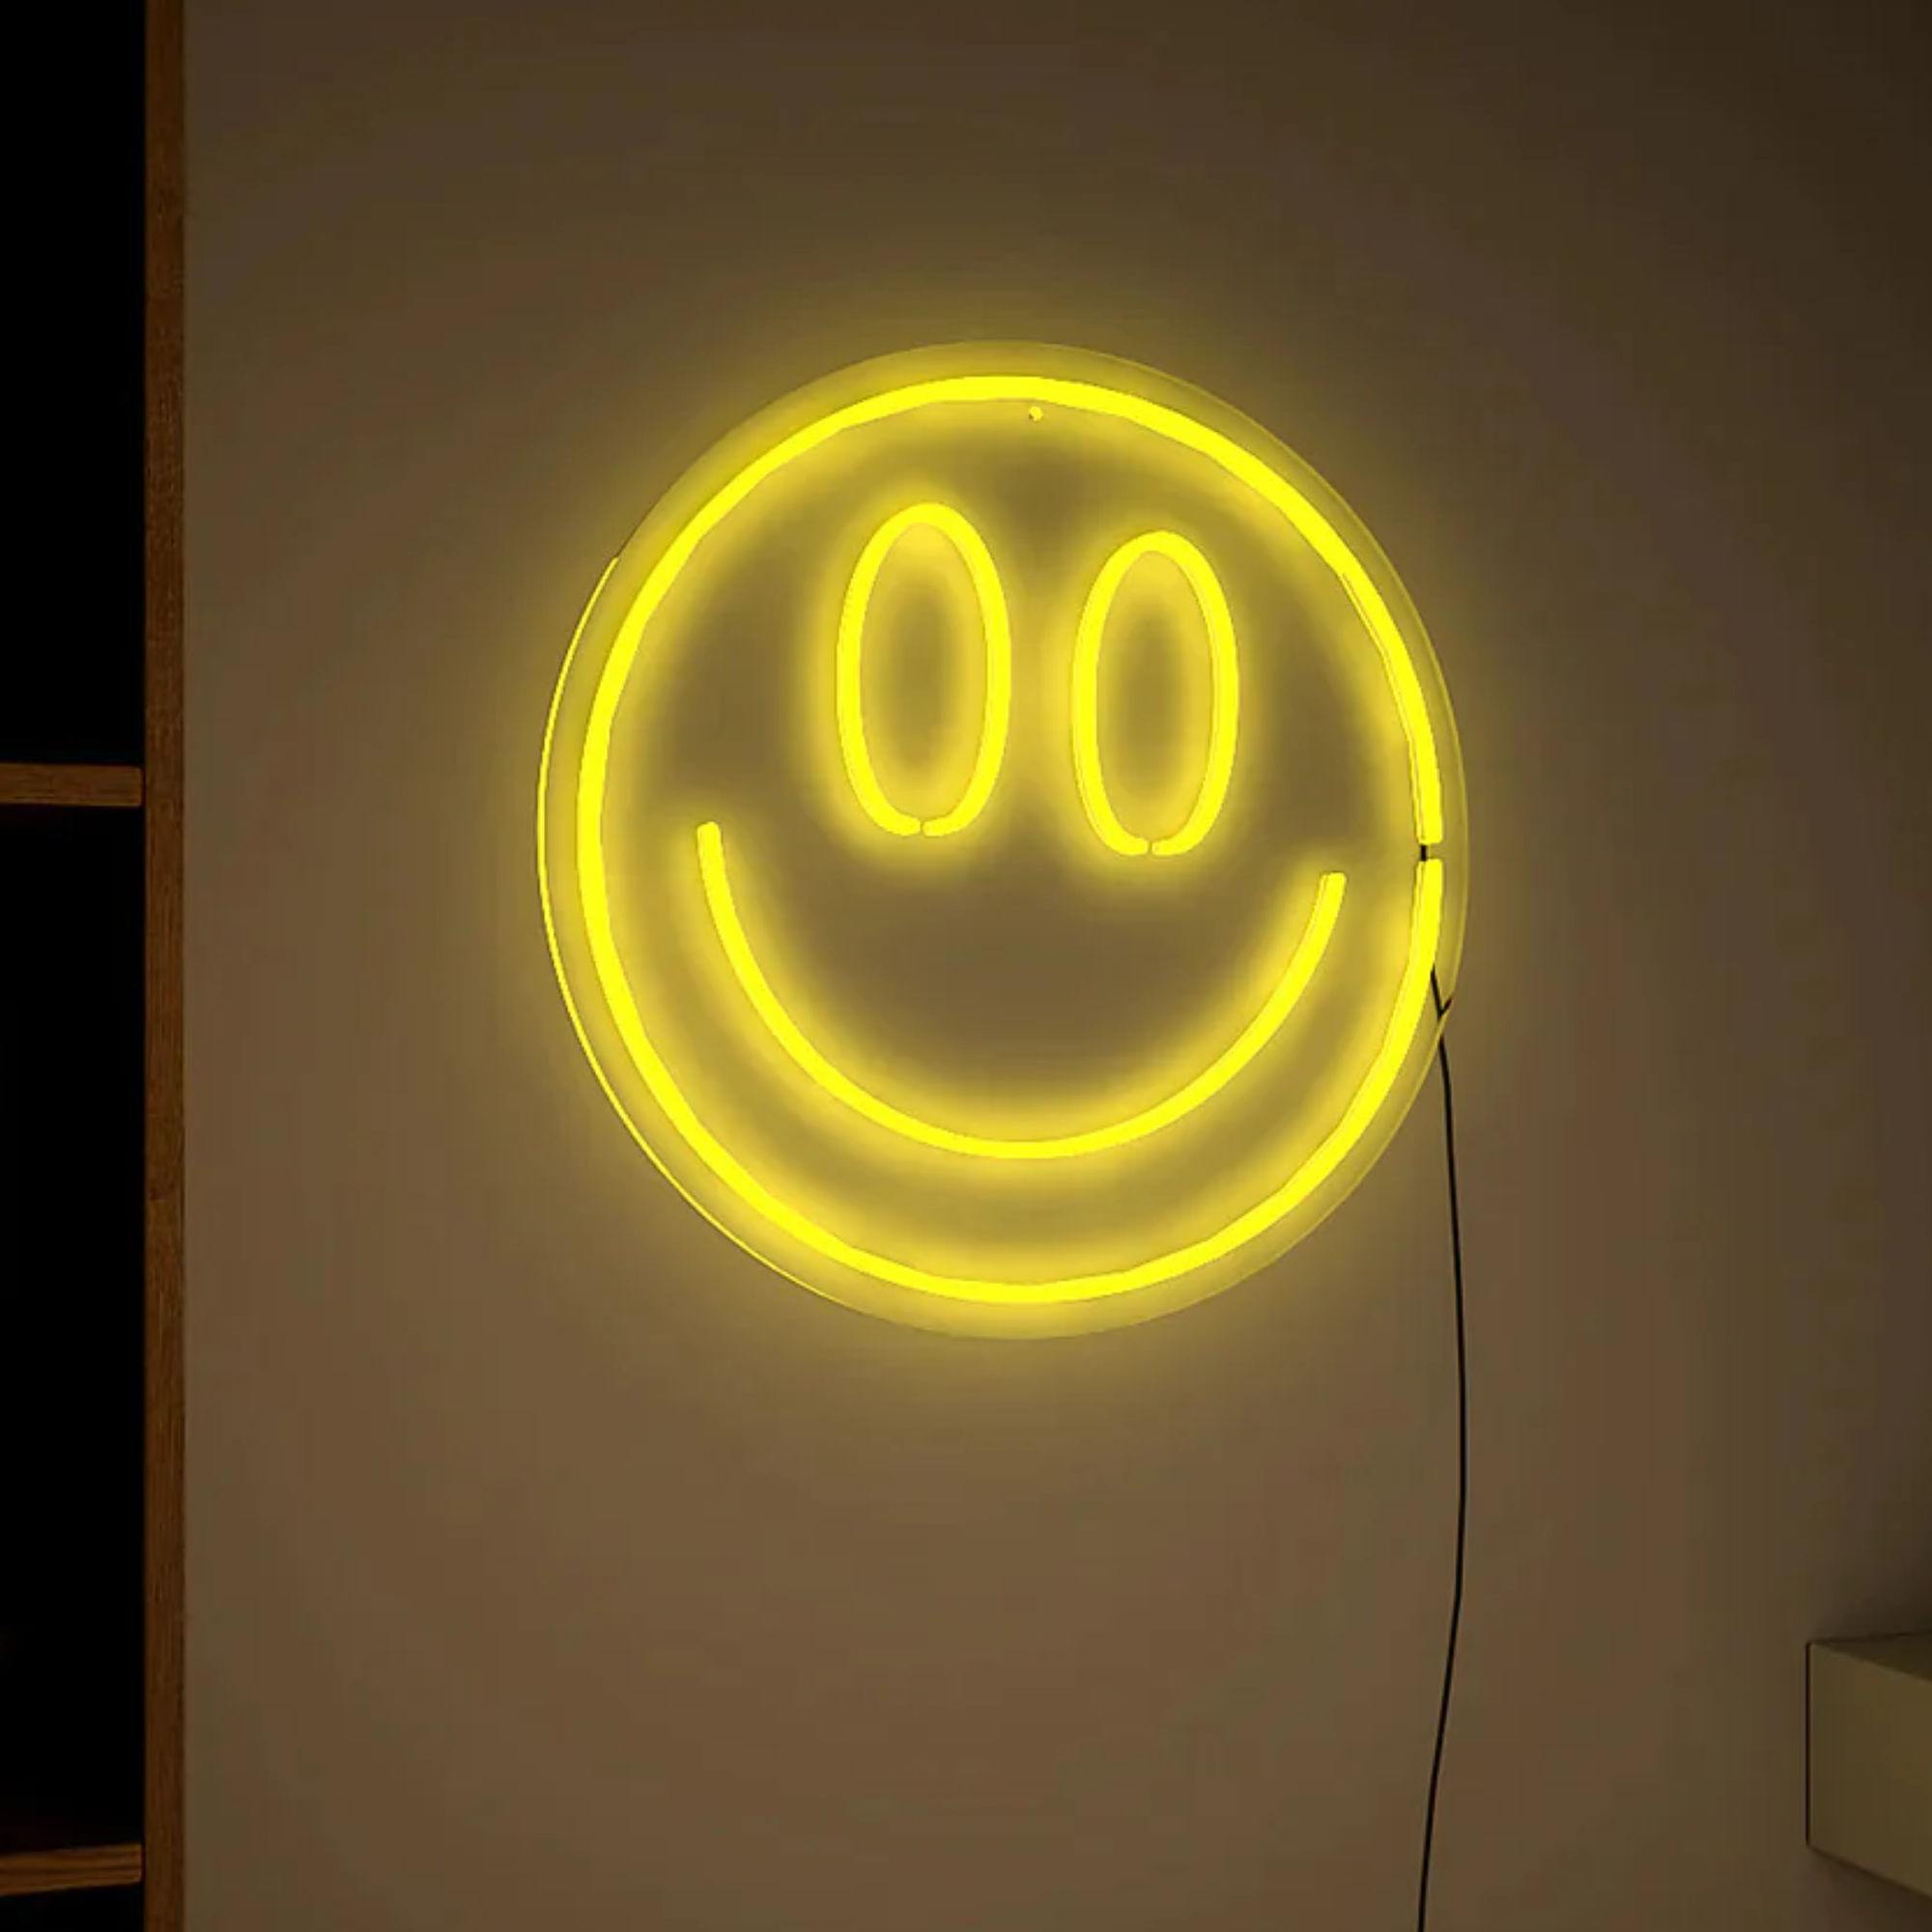 Smiley Face Neon LED Light